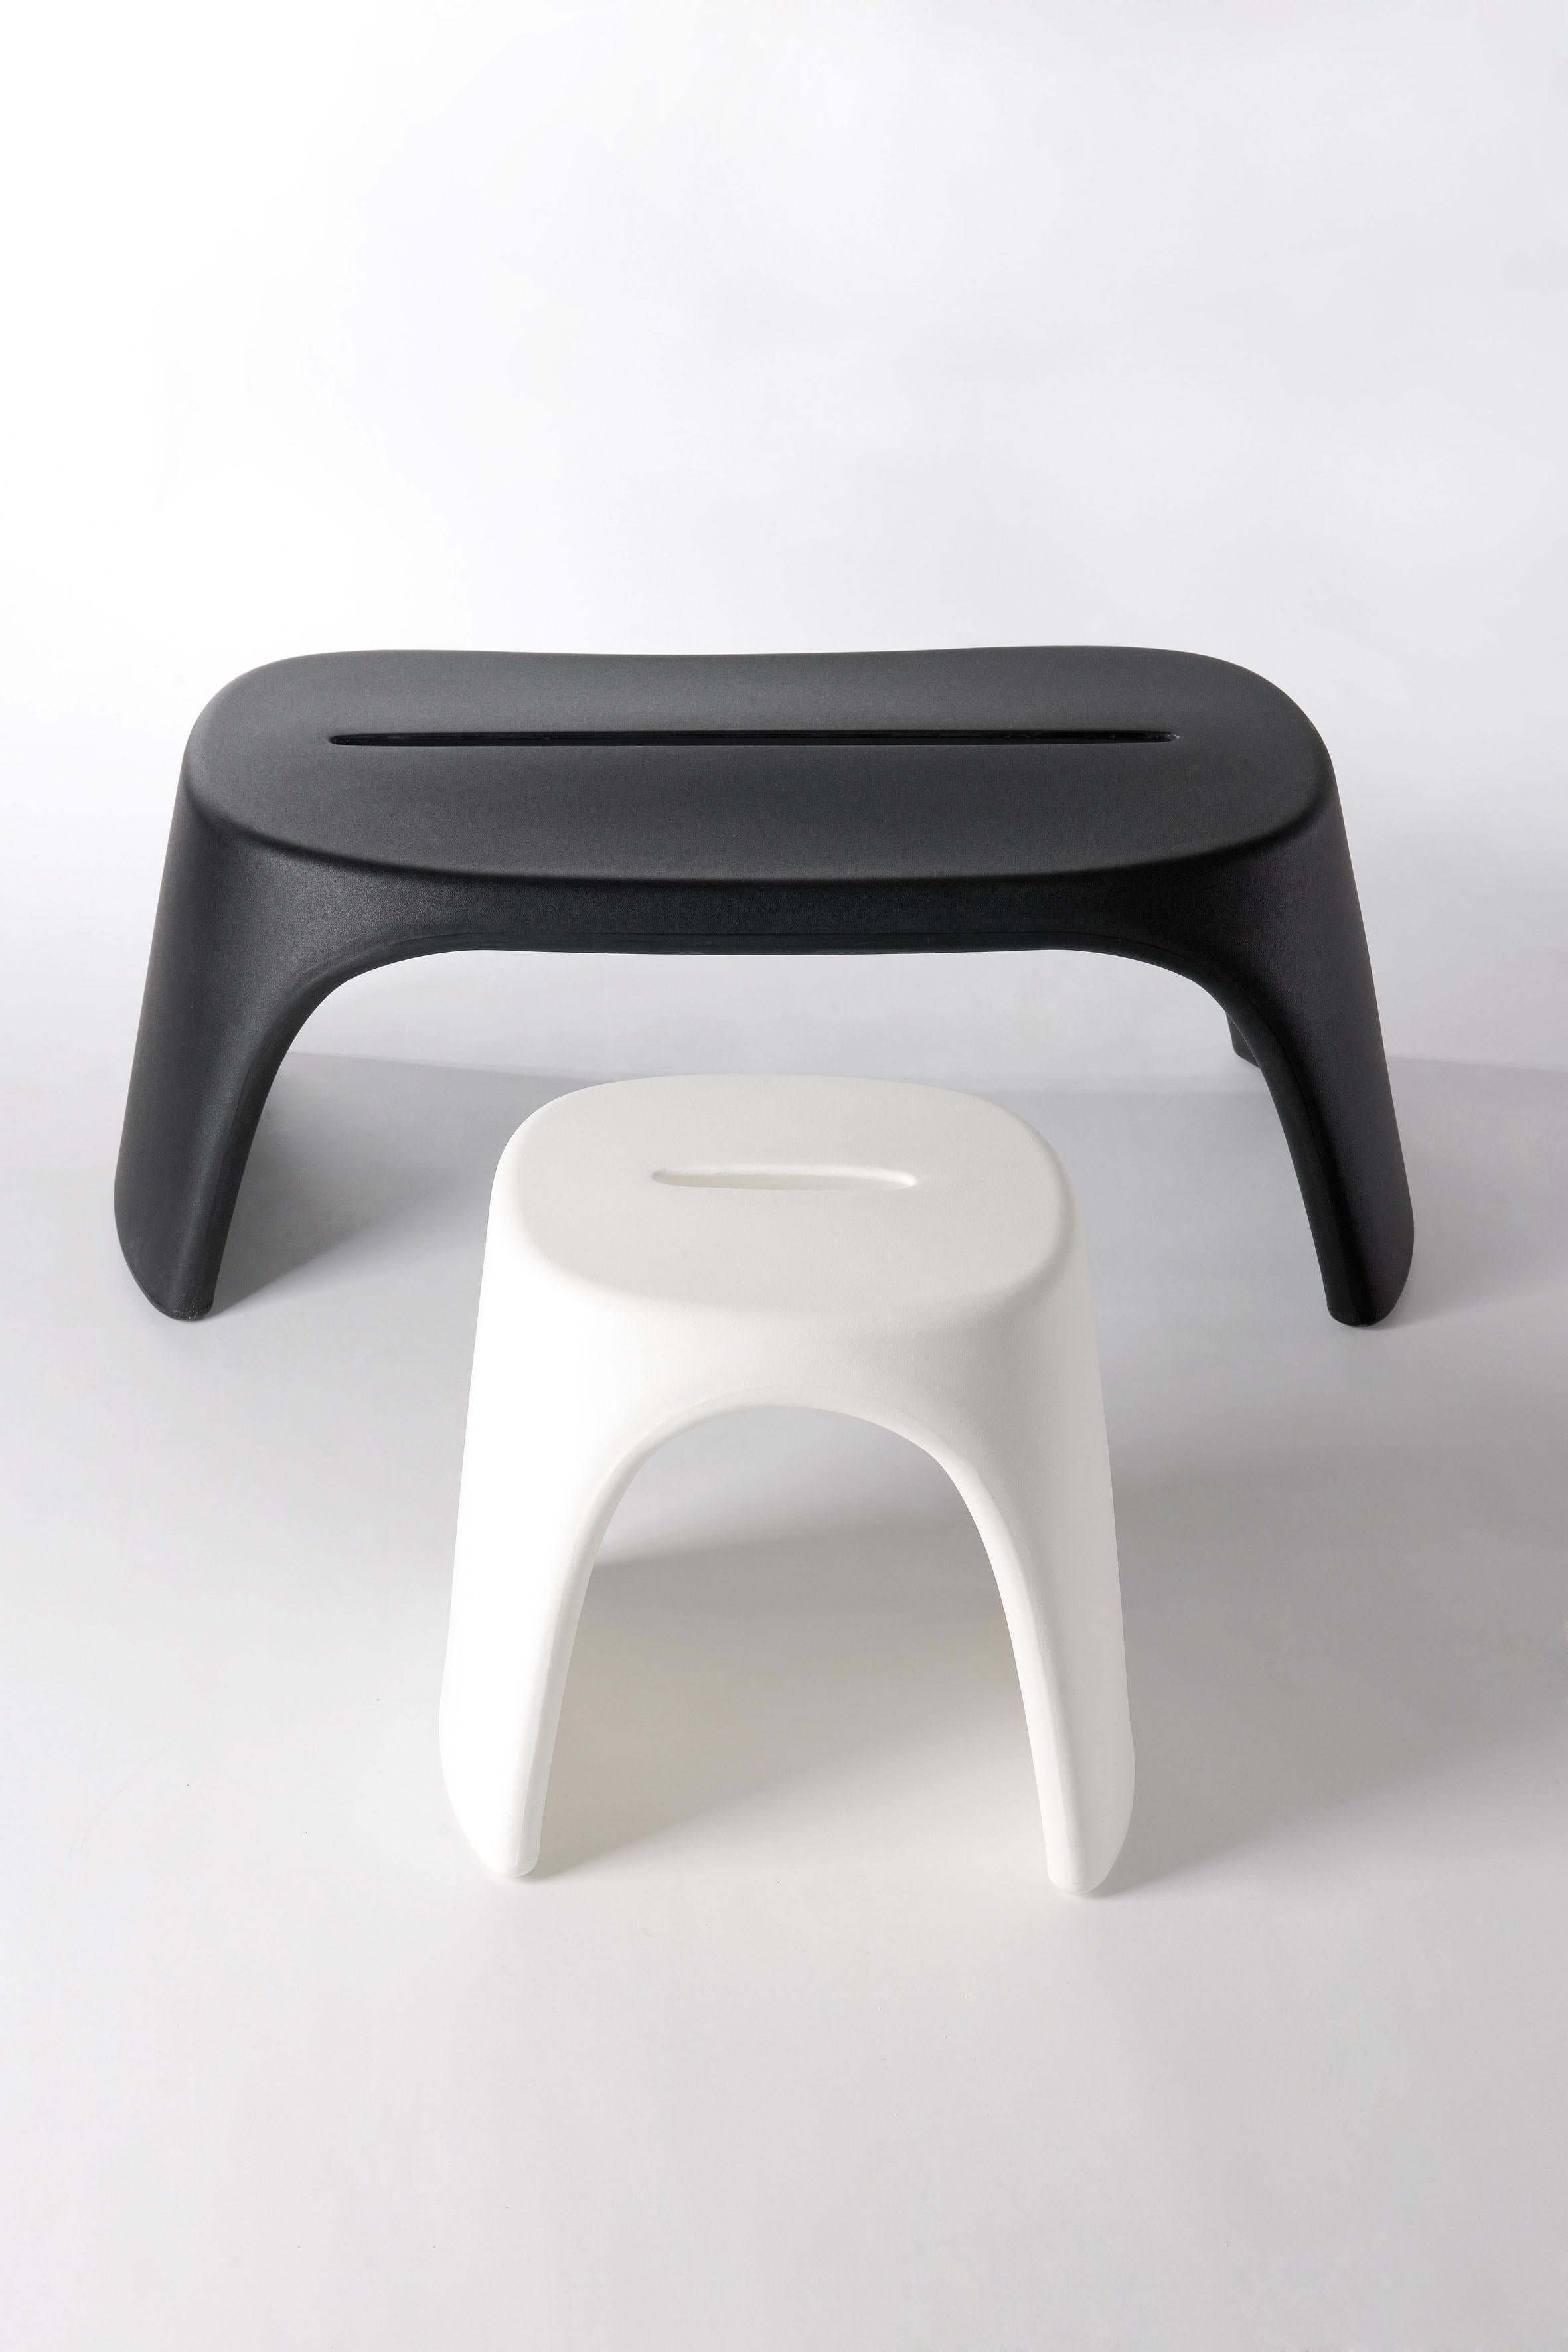 Contemporary Slide Design Amélie Sgabello Stool in Milky White by Italo Pertichini For Sale